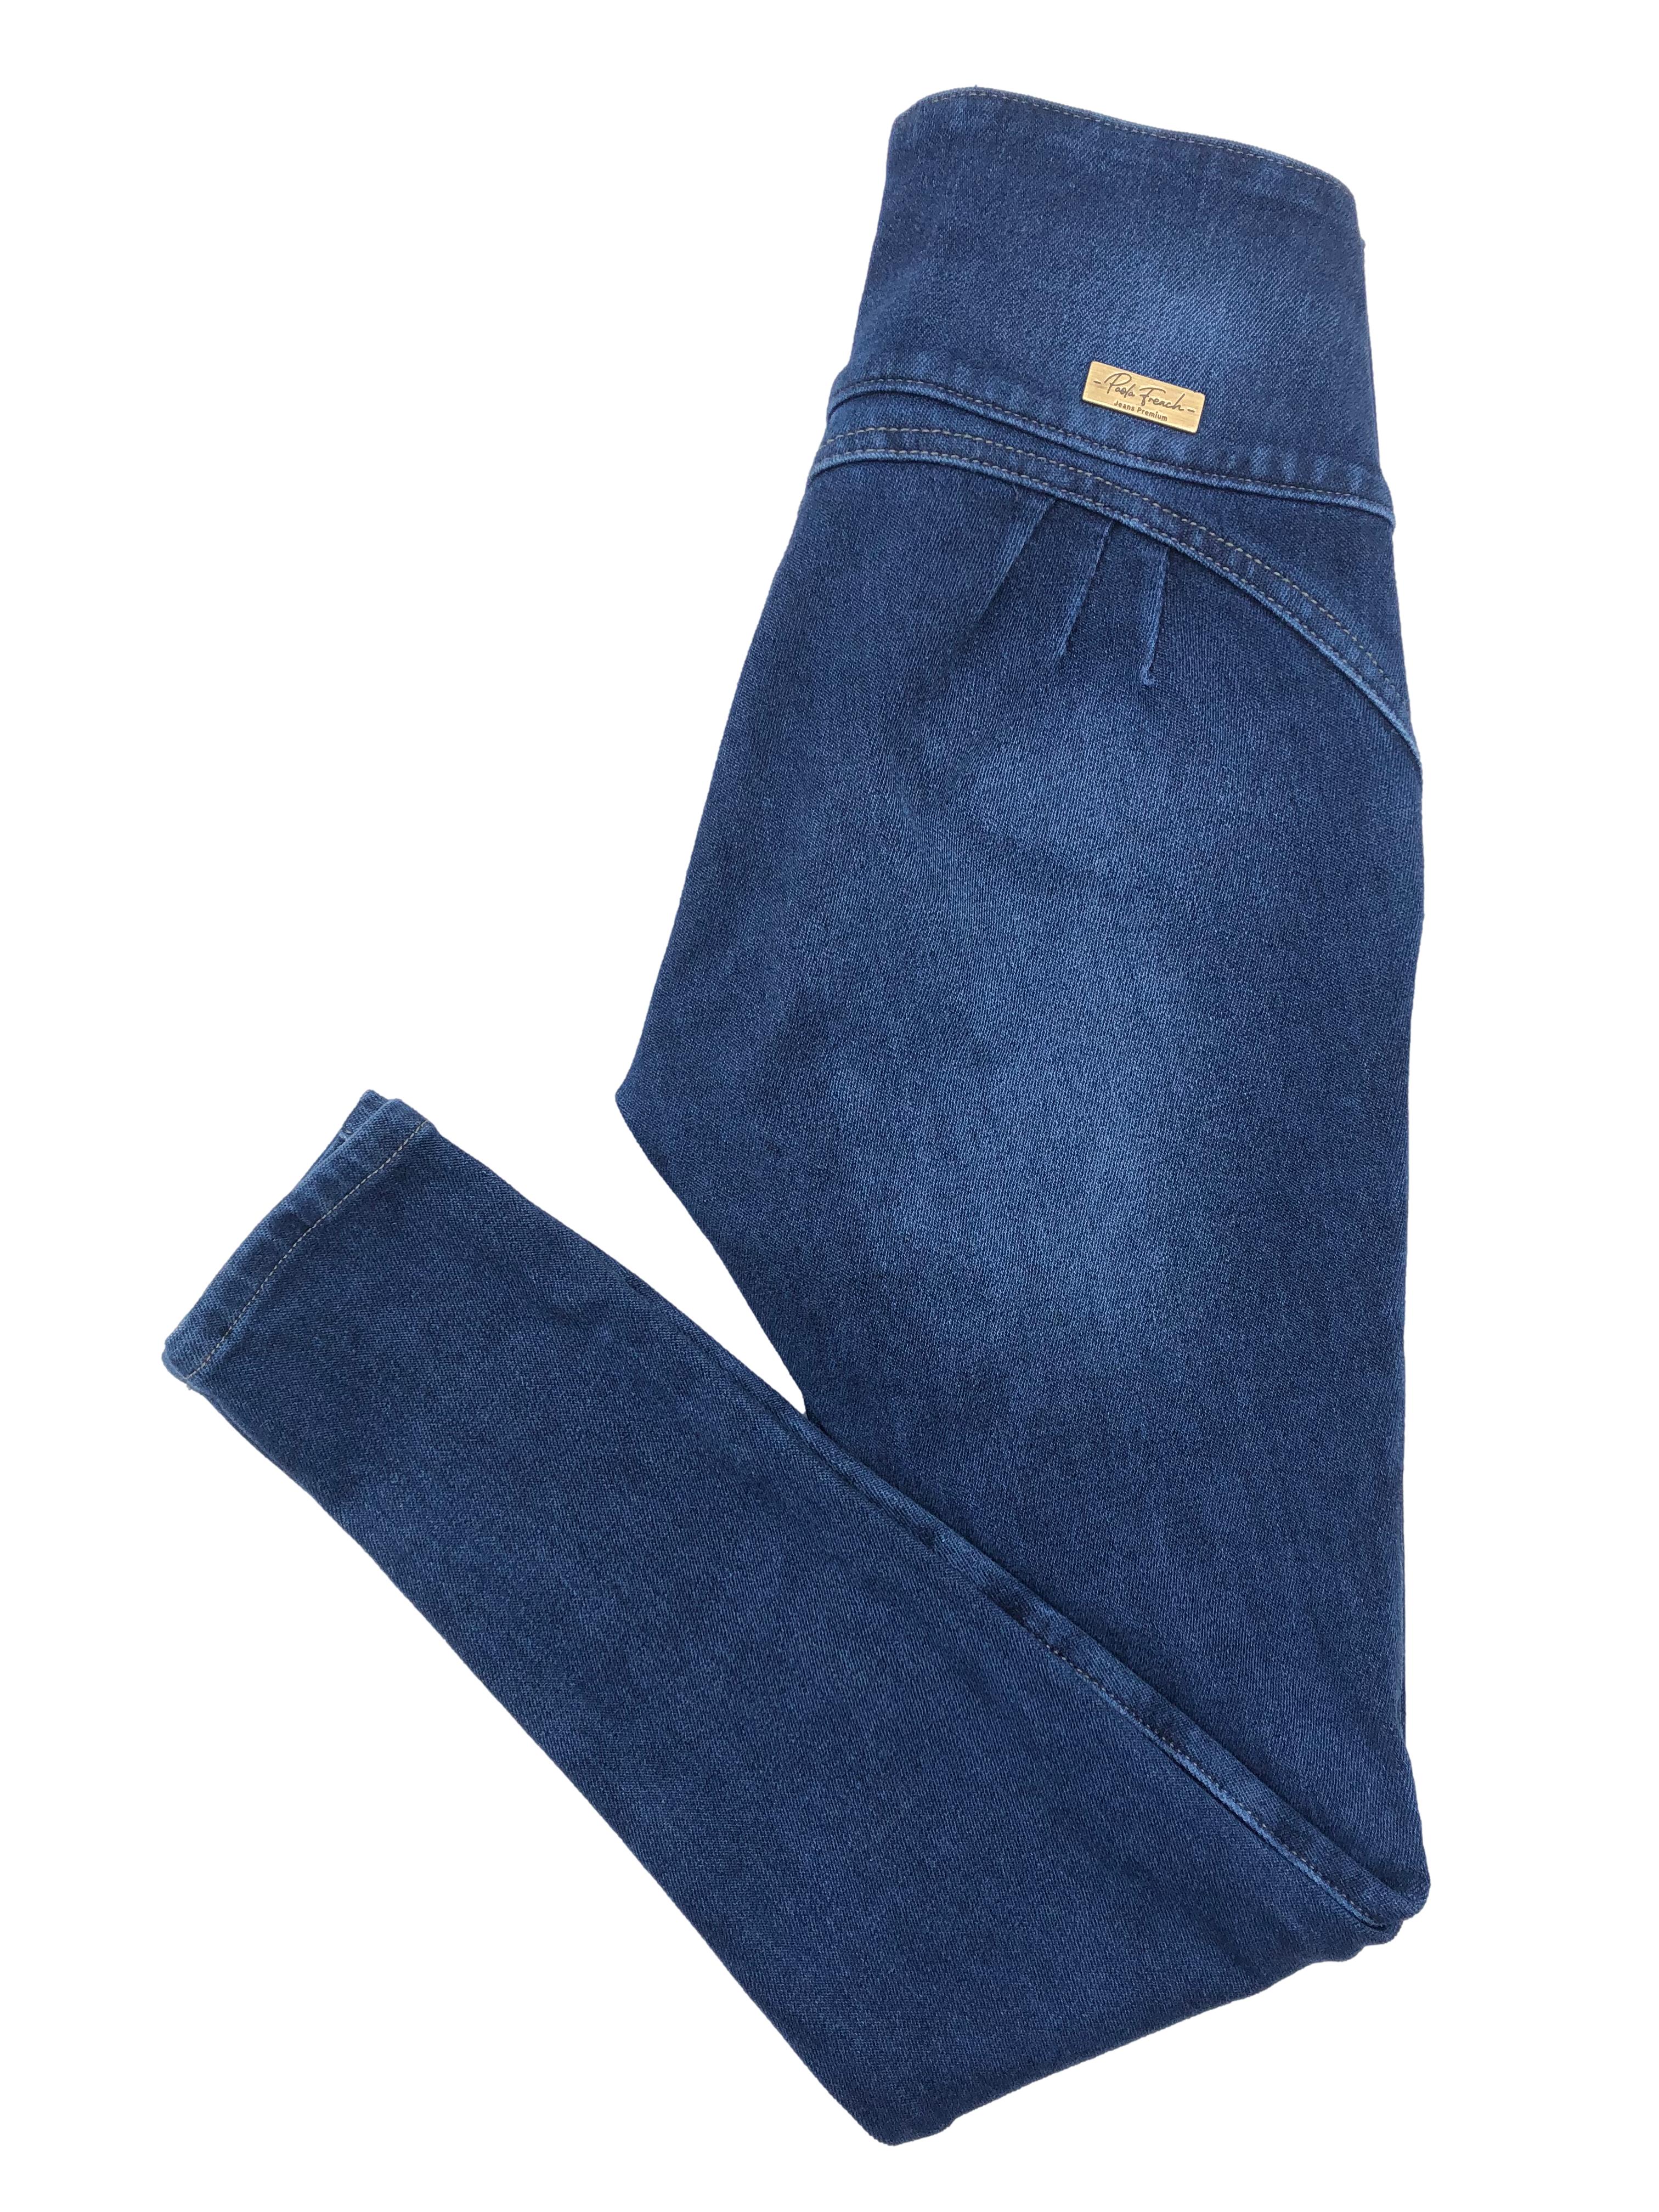 Skinny jean azul Paola French, tela stretch con focalizado, pretina ancha con bordado y botones metálicos, falsos bolsillos y entalle posterior con pinzas. Cintura 64cm sin estirar, Tiro 21.5cm, Largo 88cm.